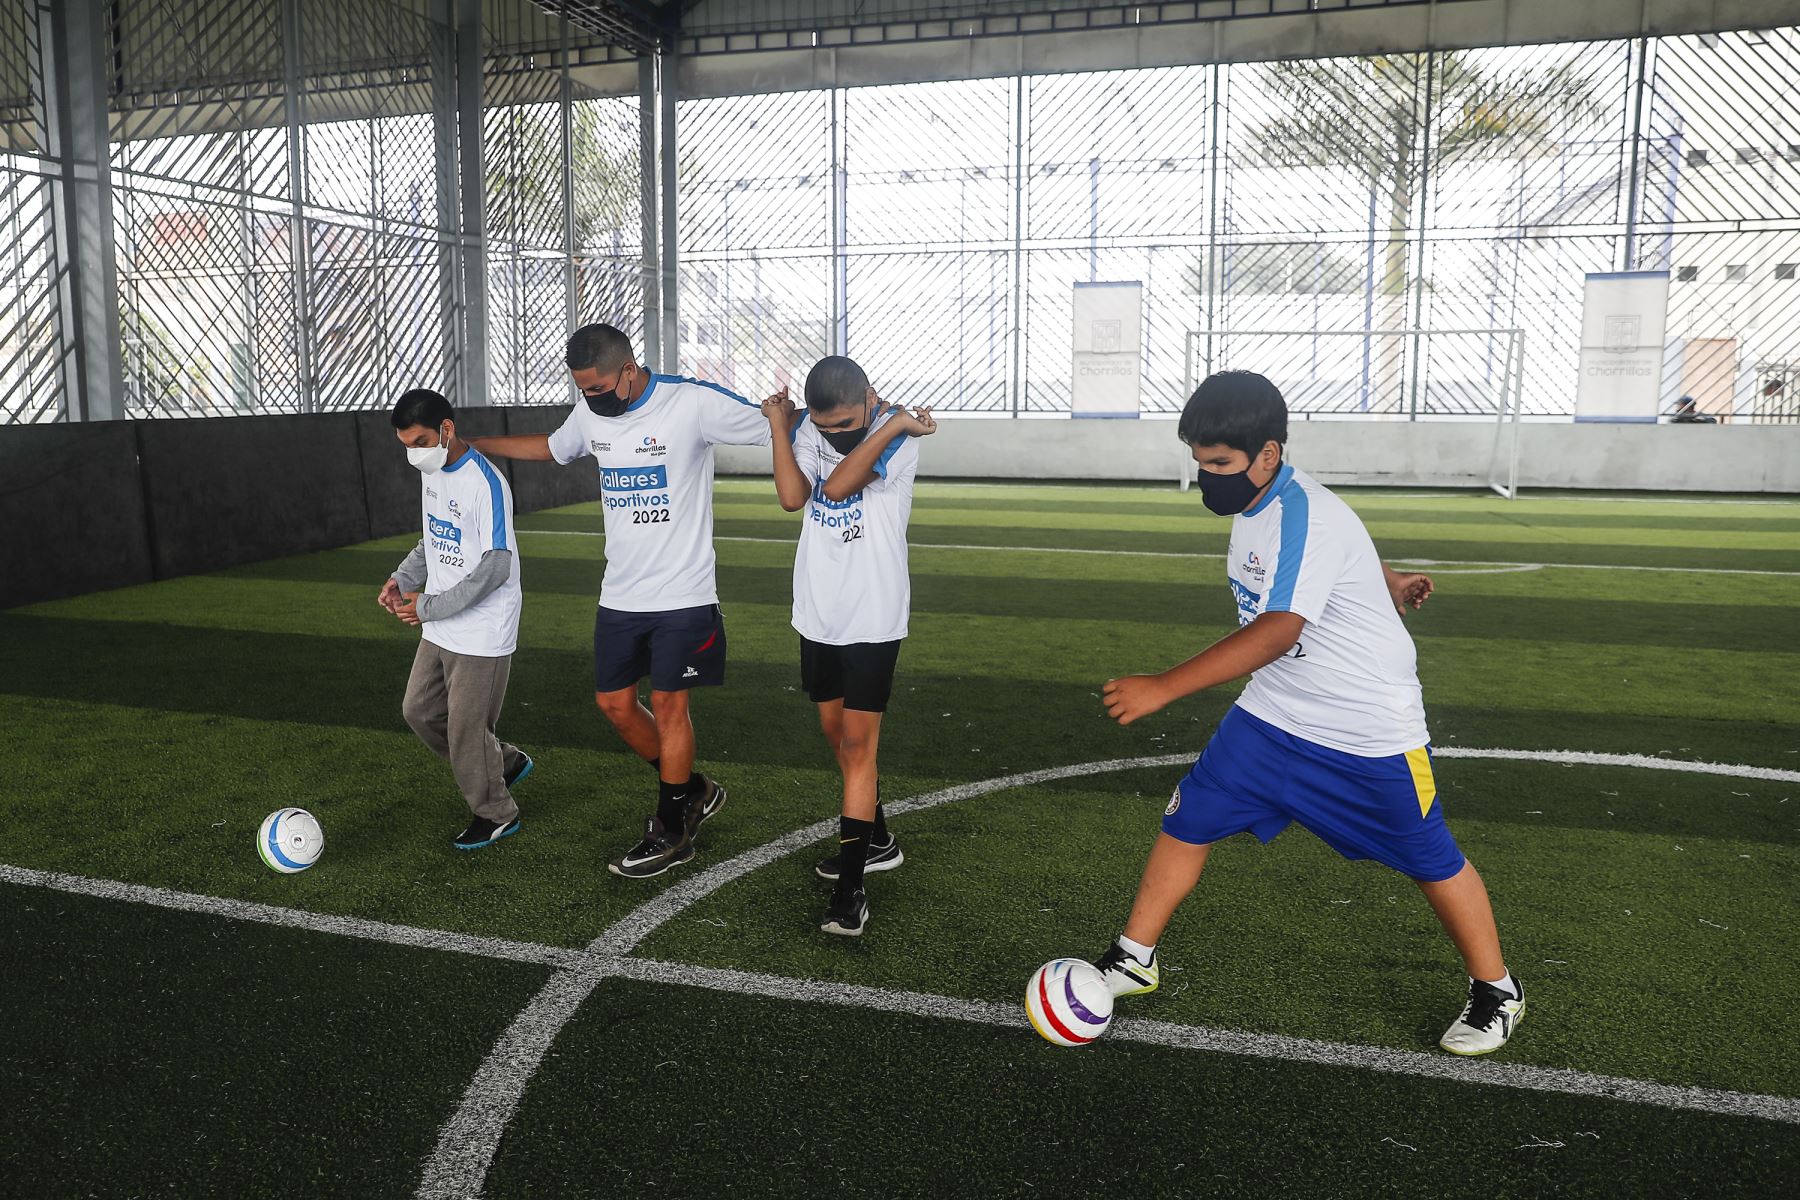 Un golazo inclusivo: La escuela de fútbol para menores con discapacidad visual  [video]